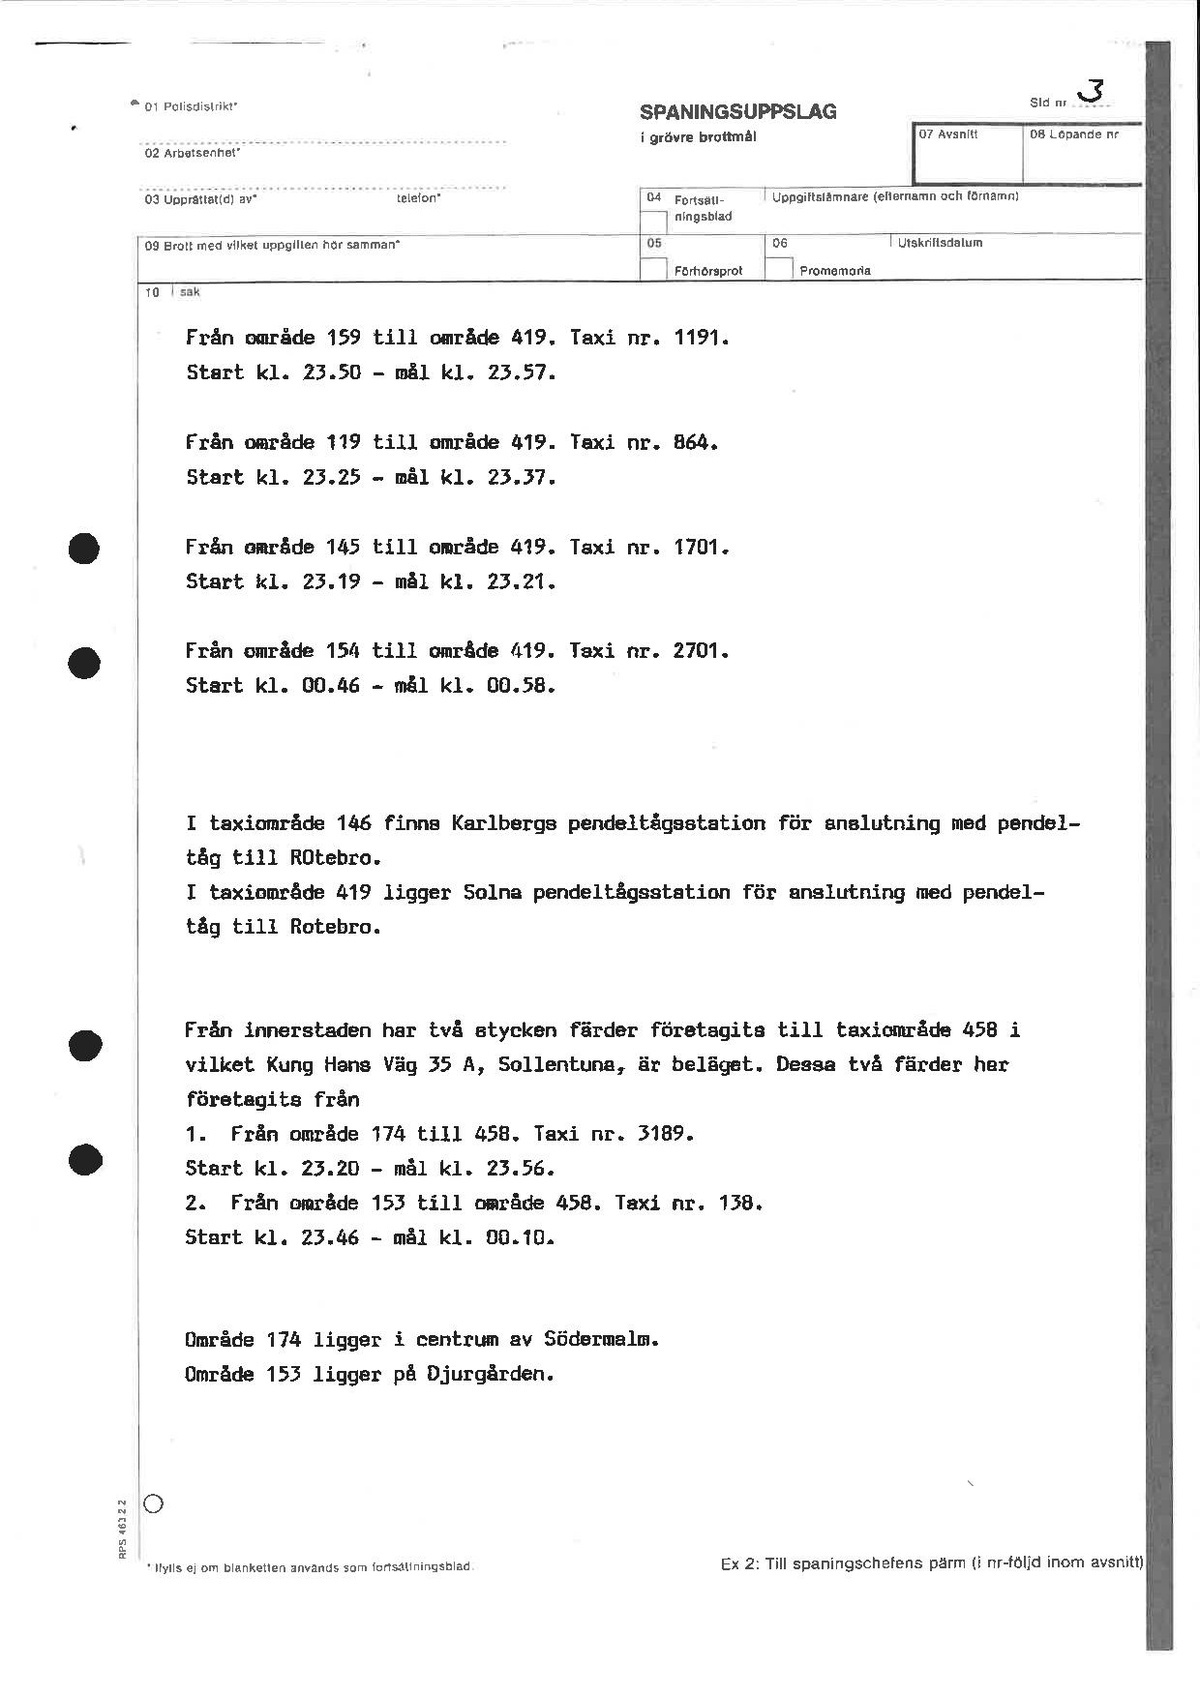 Pol-1989-02-23 KD11315-00 kontroll-av-uförd-taxiresor-utförda-mellan-2315-0100-mordnatten.pdf